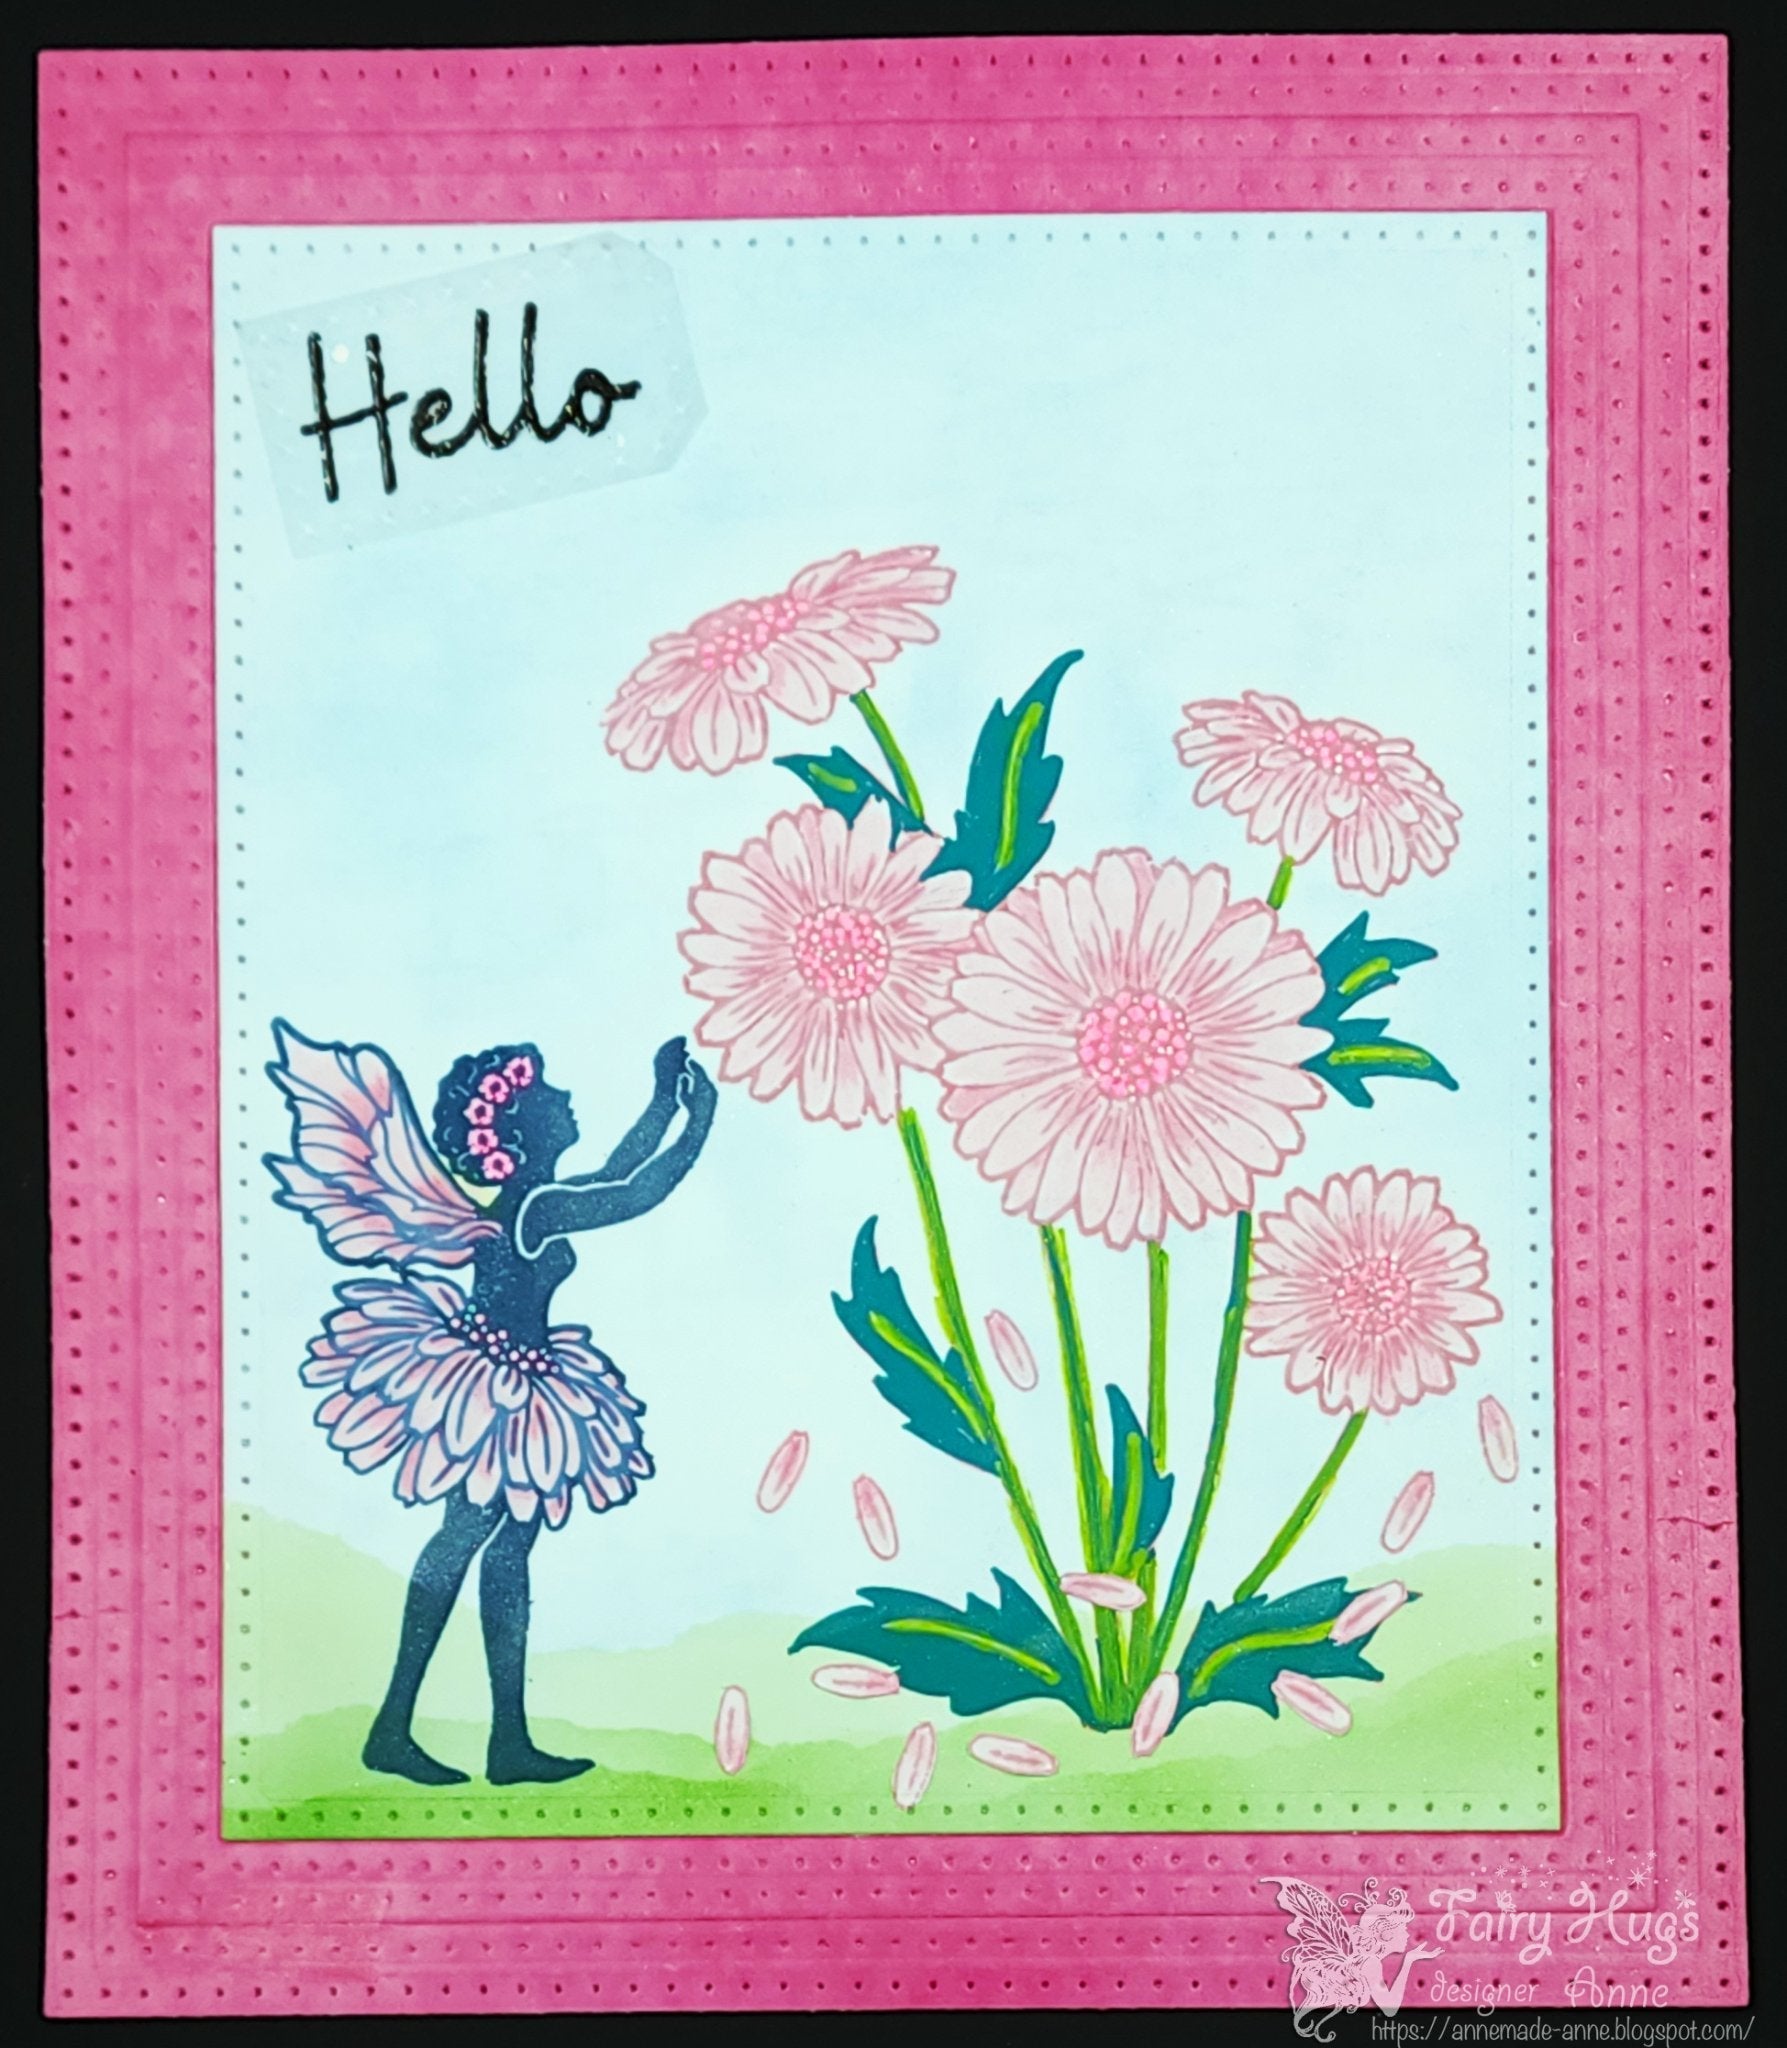 Fairy Hugs Stamps - Zara's Daisy